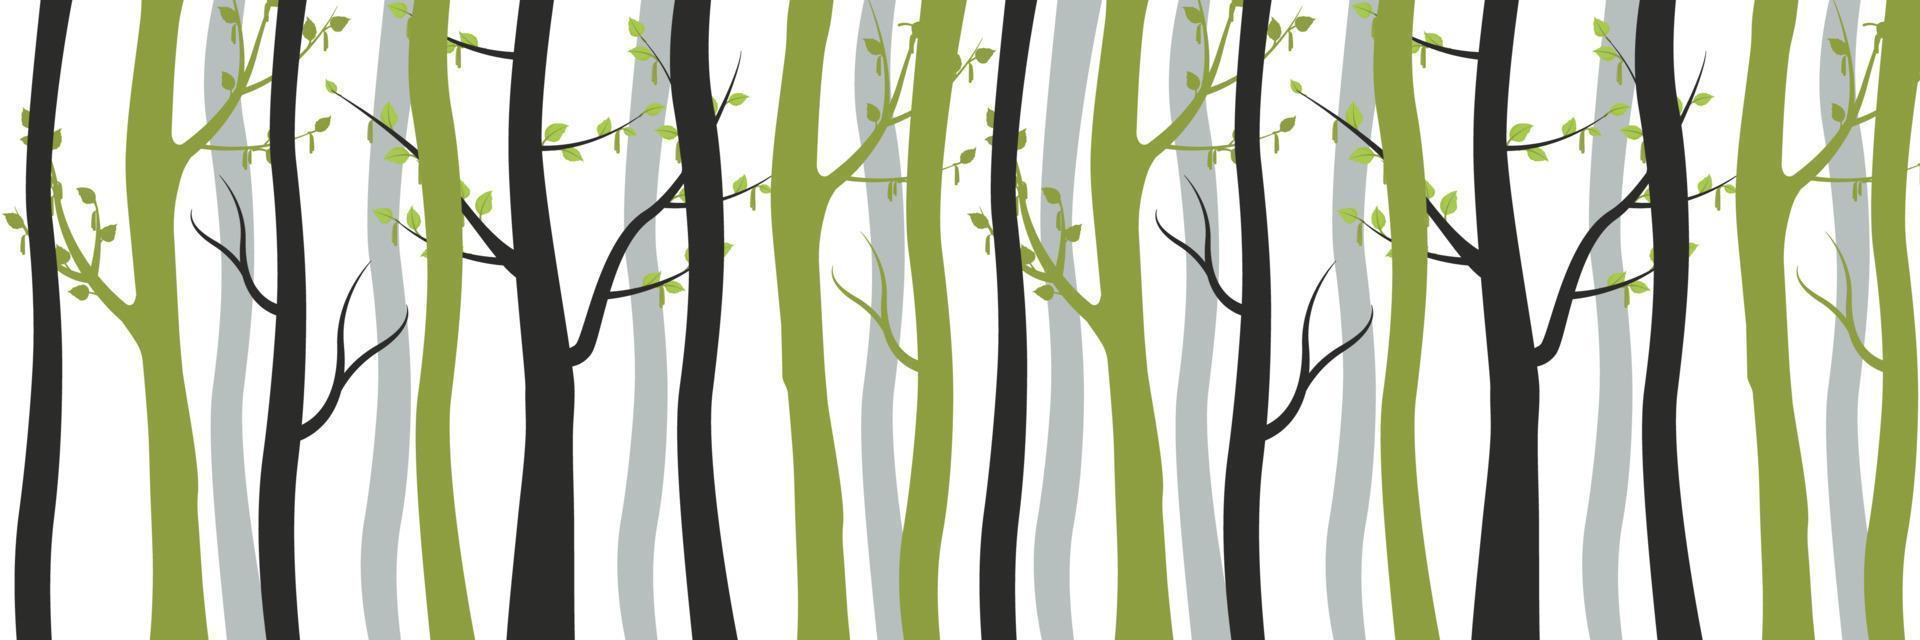 groen en verdord zwart bomen in Woud achtergrond. slank jong berken met bloeiende bladeren en oud dood boomstammen verweven. vector